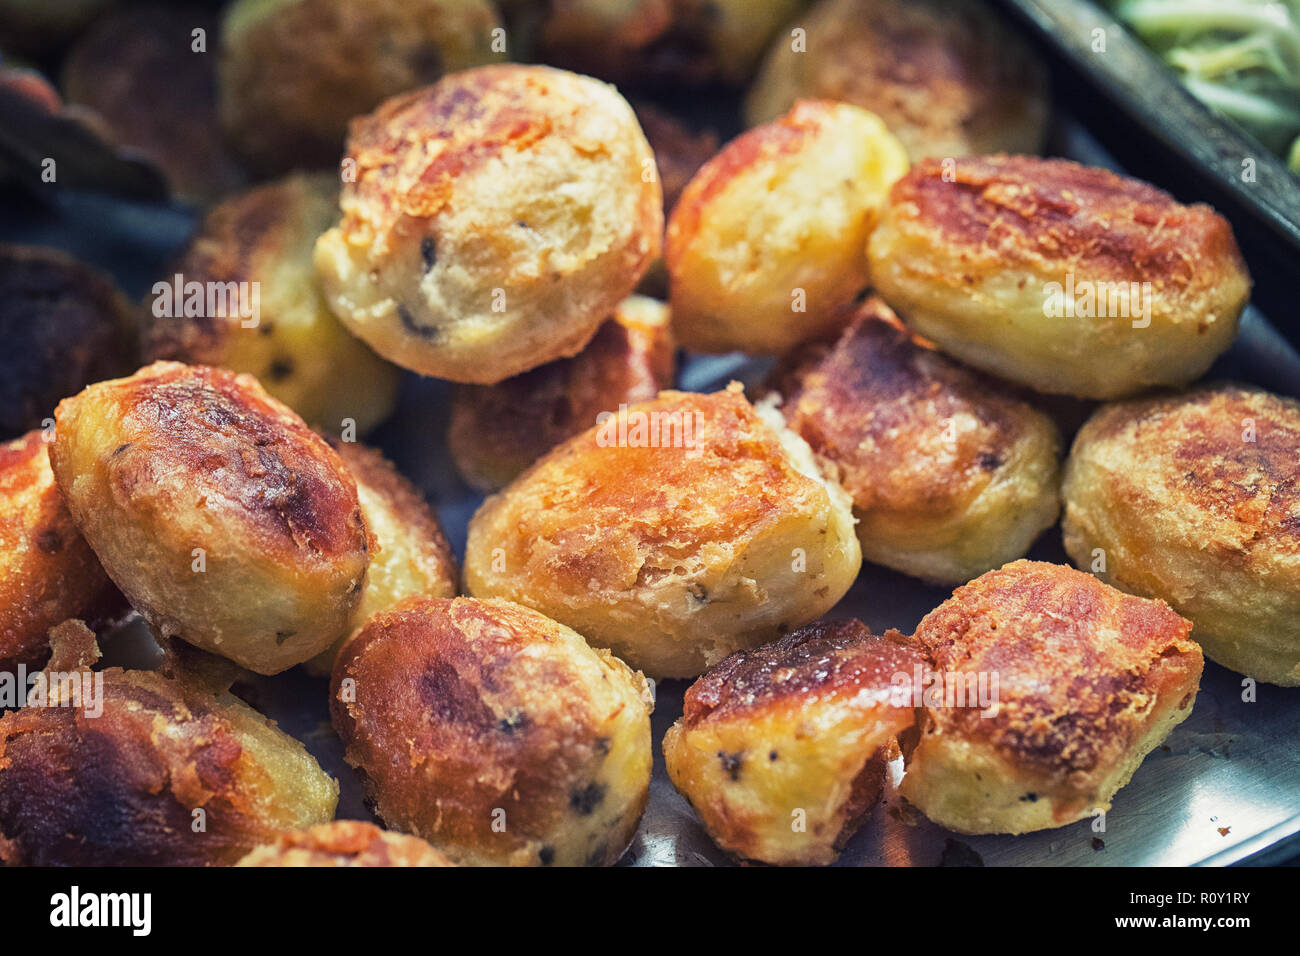 Ein frisch zubereitetes, knusprig und knackig sein, ein Tablett mit gerösteten Kartoffeln eine Britische traditionellen Roastbeef Sonntag Mittagessen Abendessen Mahlzeit zu begleiten. Stockfoto